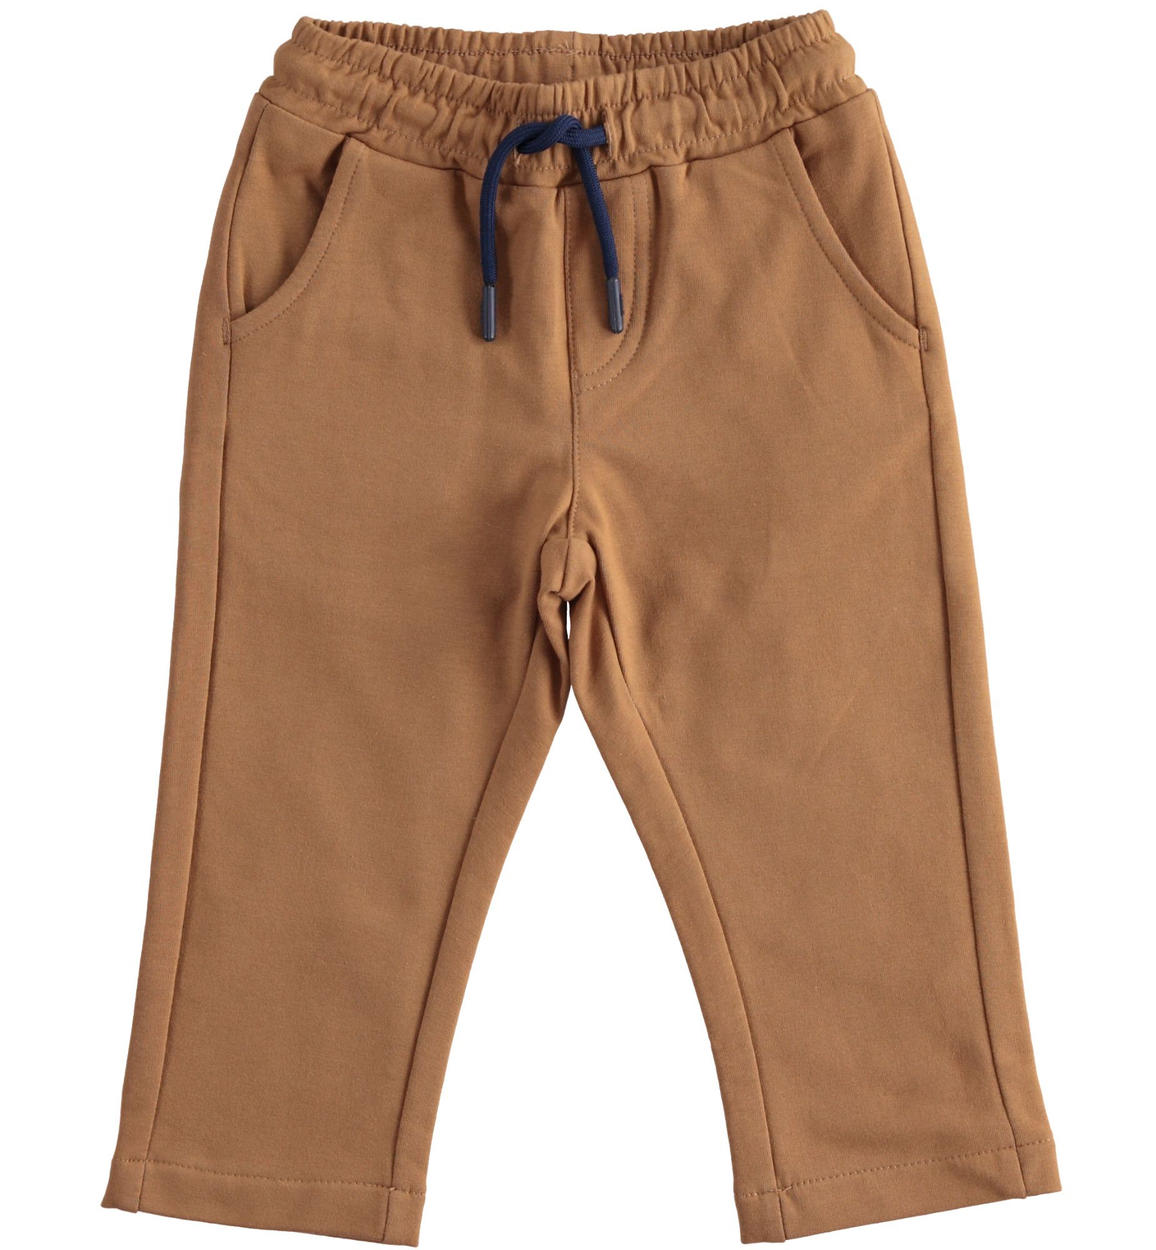 Pantalone in felpa stretch di cotone BEIGE Sarabanda